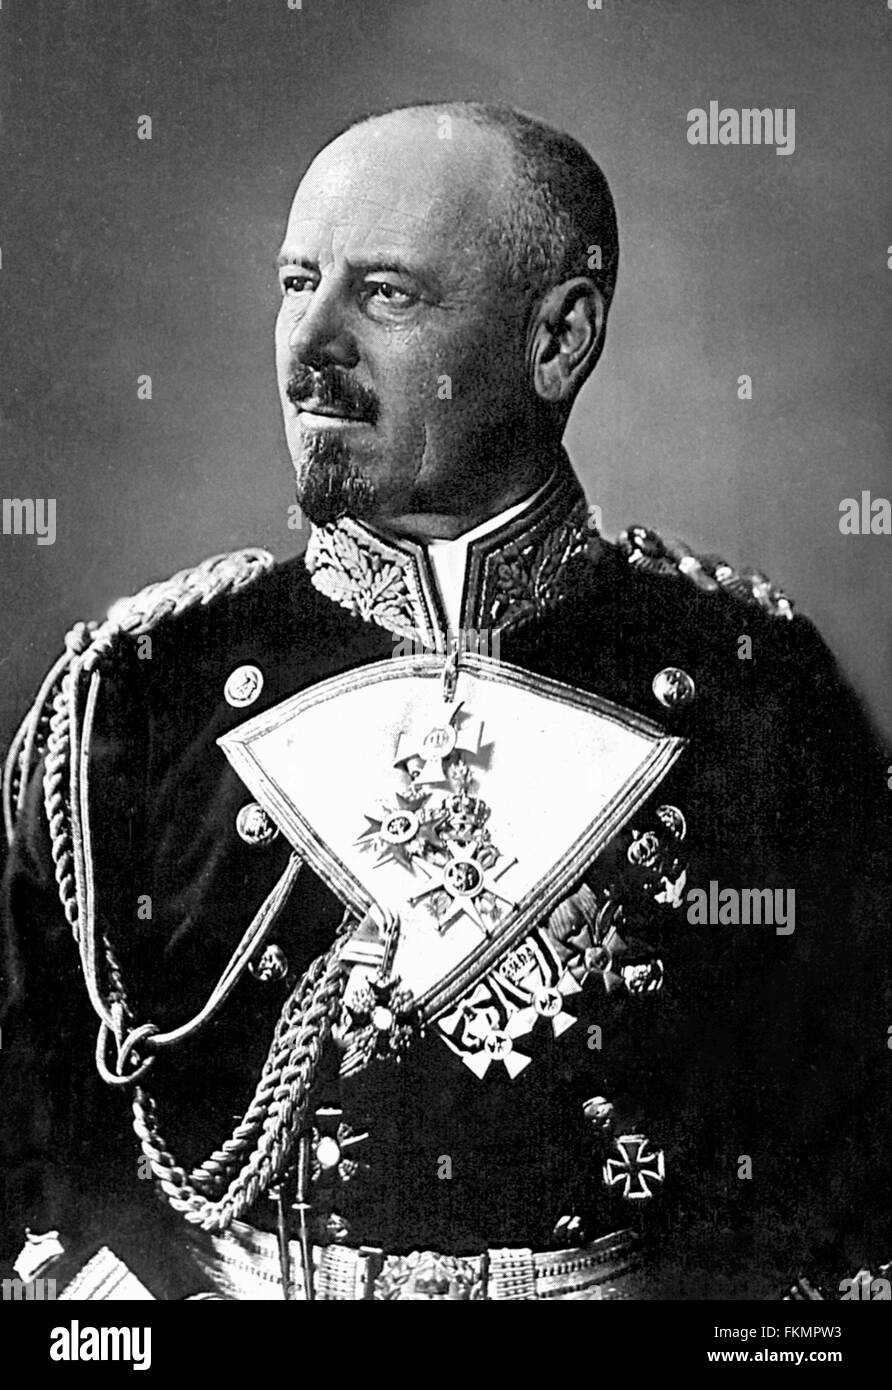 Admiral Franz von Hipper, Befehlshaber der deutschen Flotte in der Schlacht von Jütland im ersten Weltkrieg.  Foto zwischen 1910 und 1920 Stockfoto